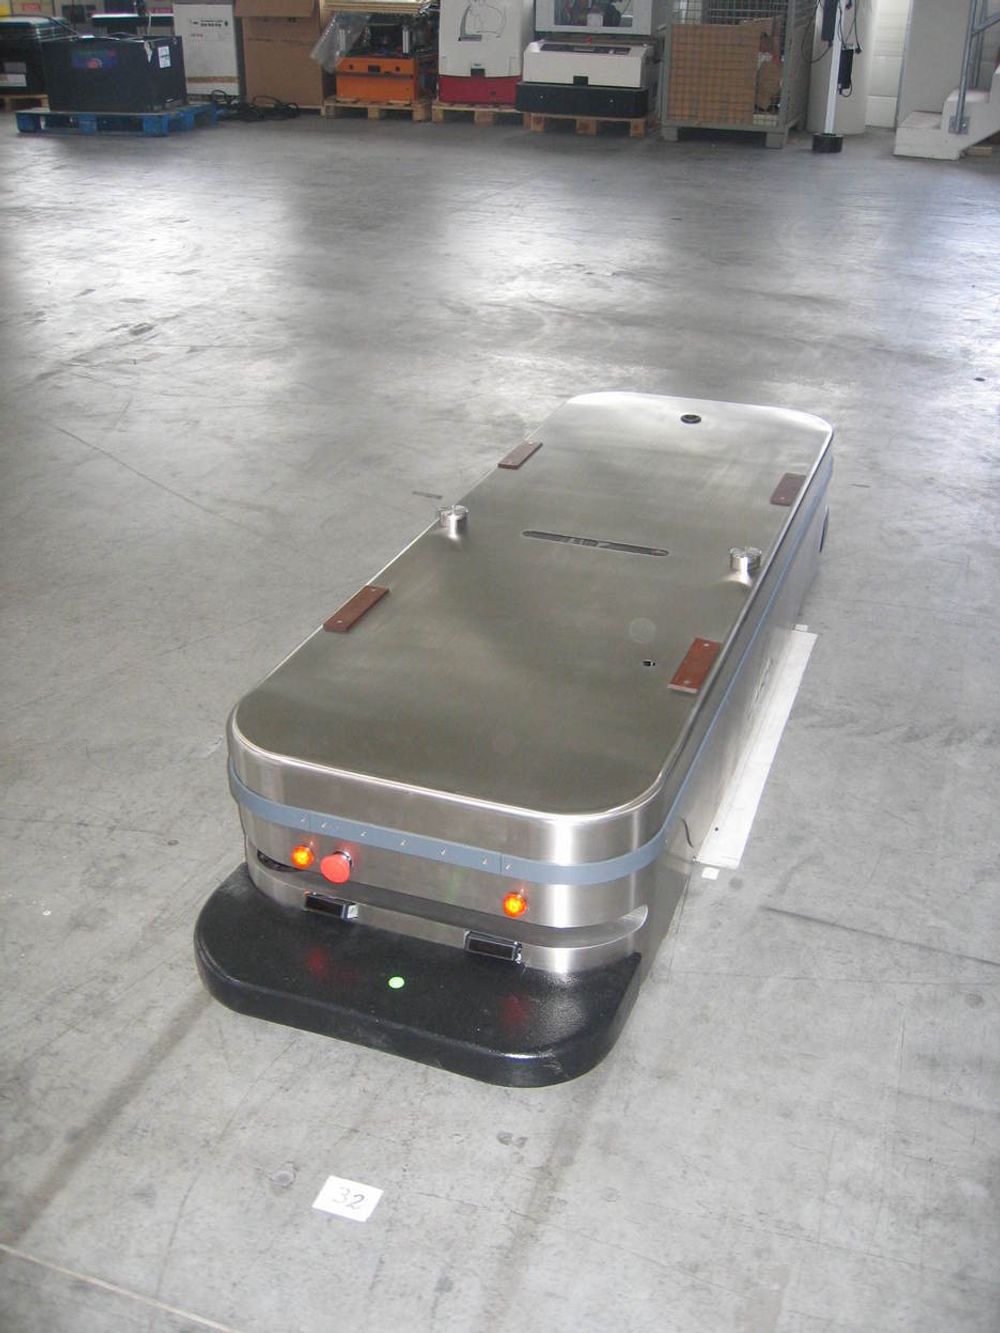 Vogn i AGV-systemet på nye Ahus. AGV står for Automated Guided Vehicle, og er et system med robotiserte, førerløse vogner som frakter varer i korridorene.